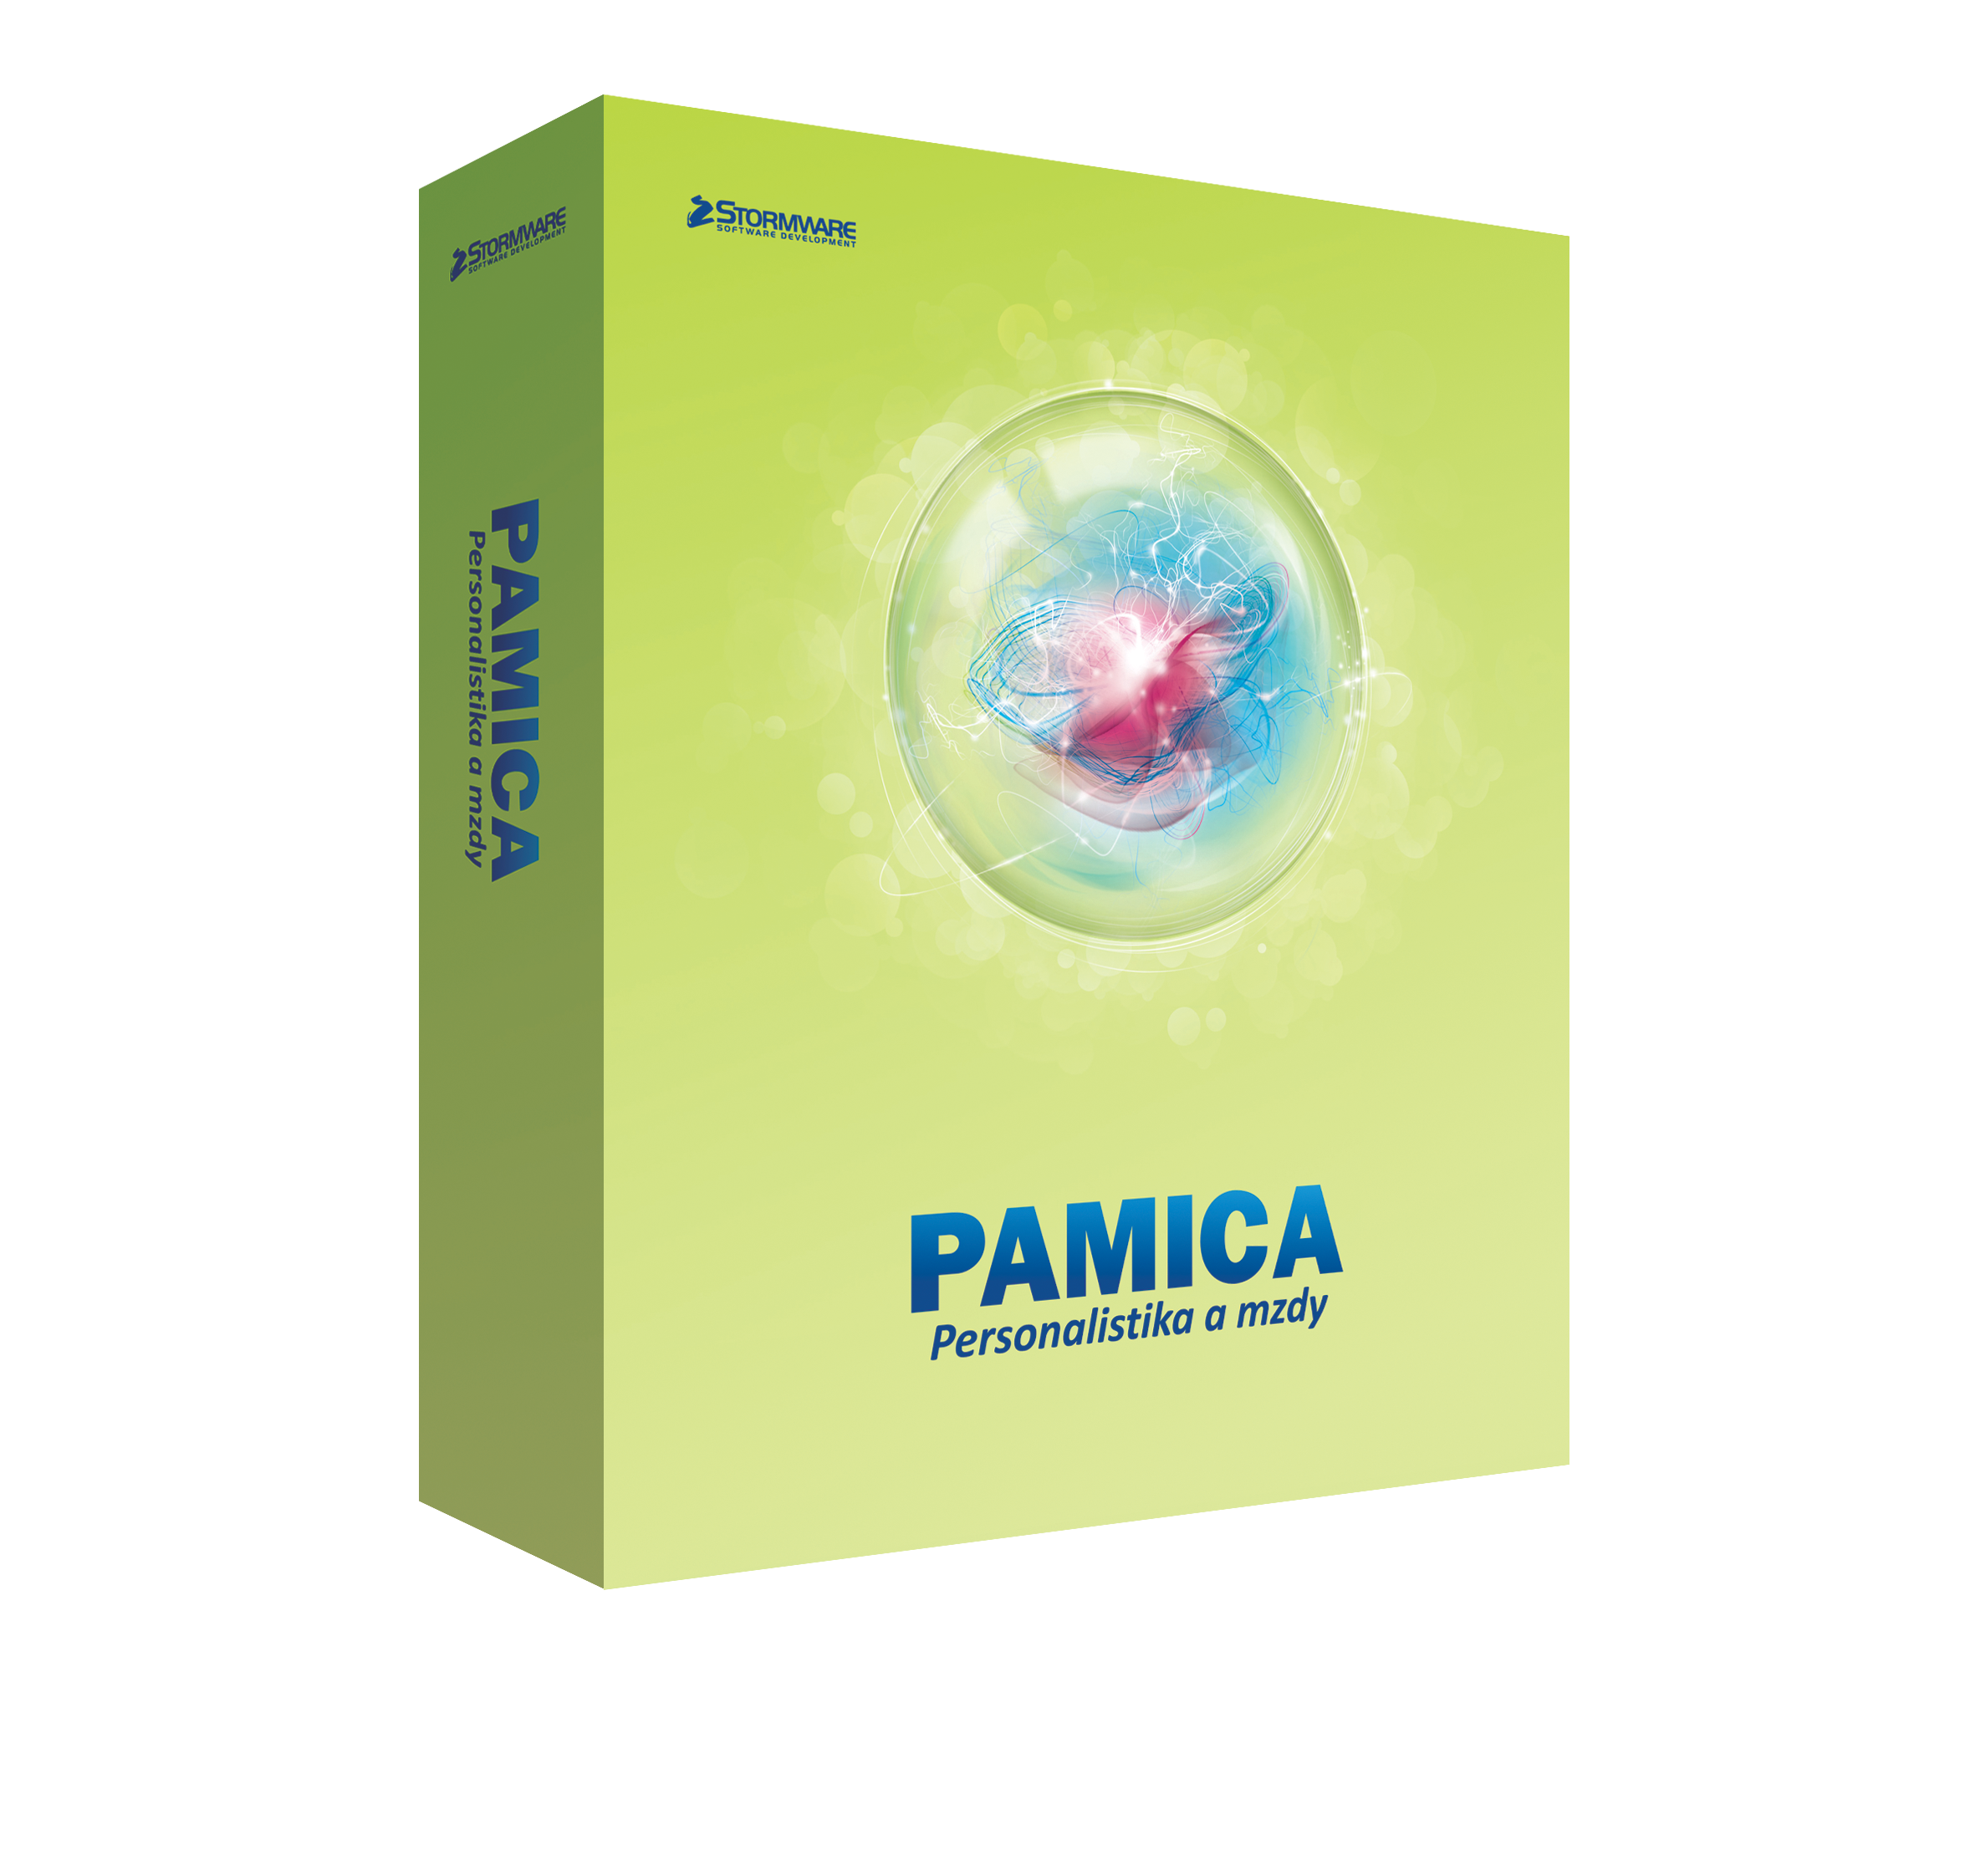 PAMICA M200 - základní licence pro 1 pc